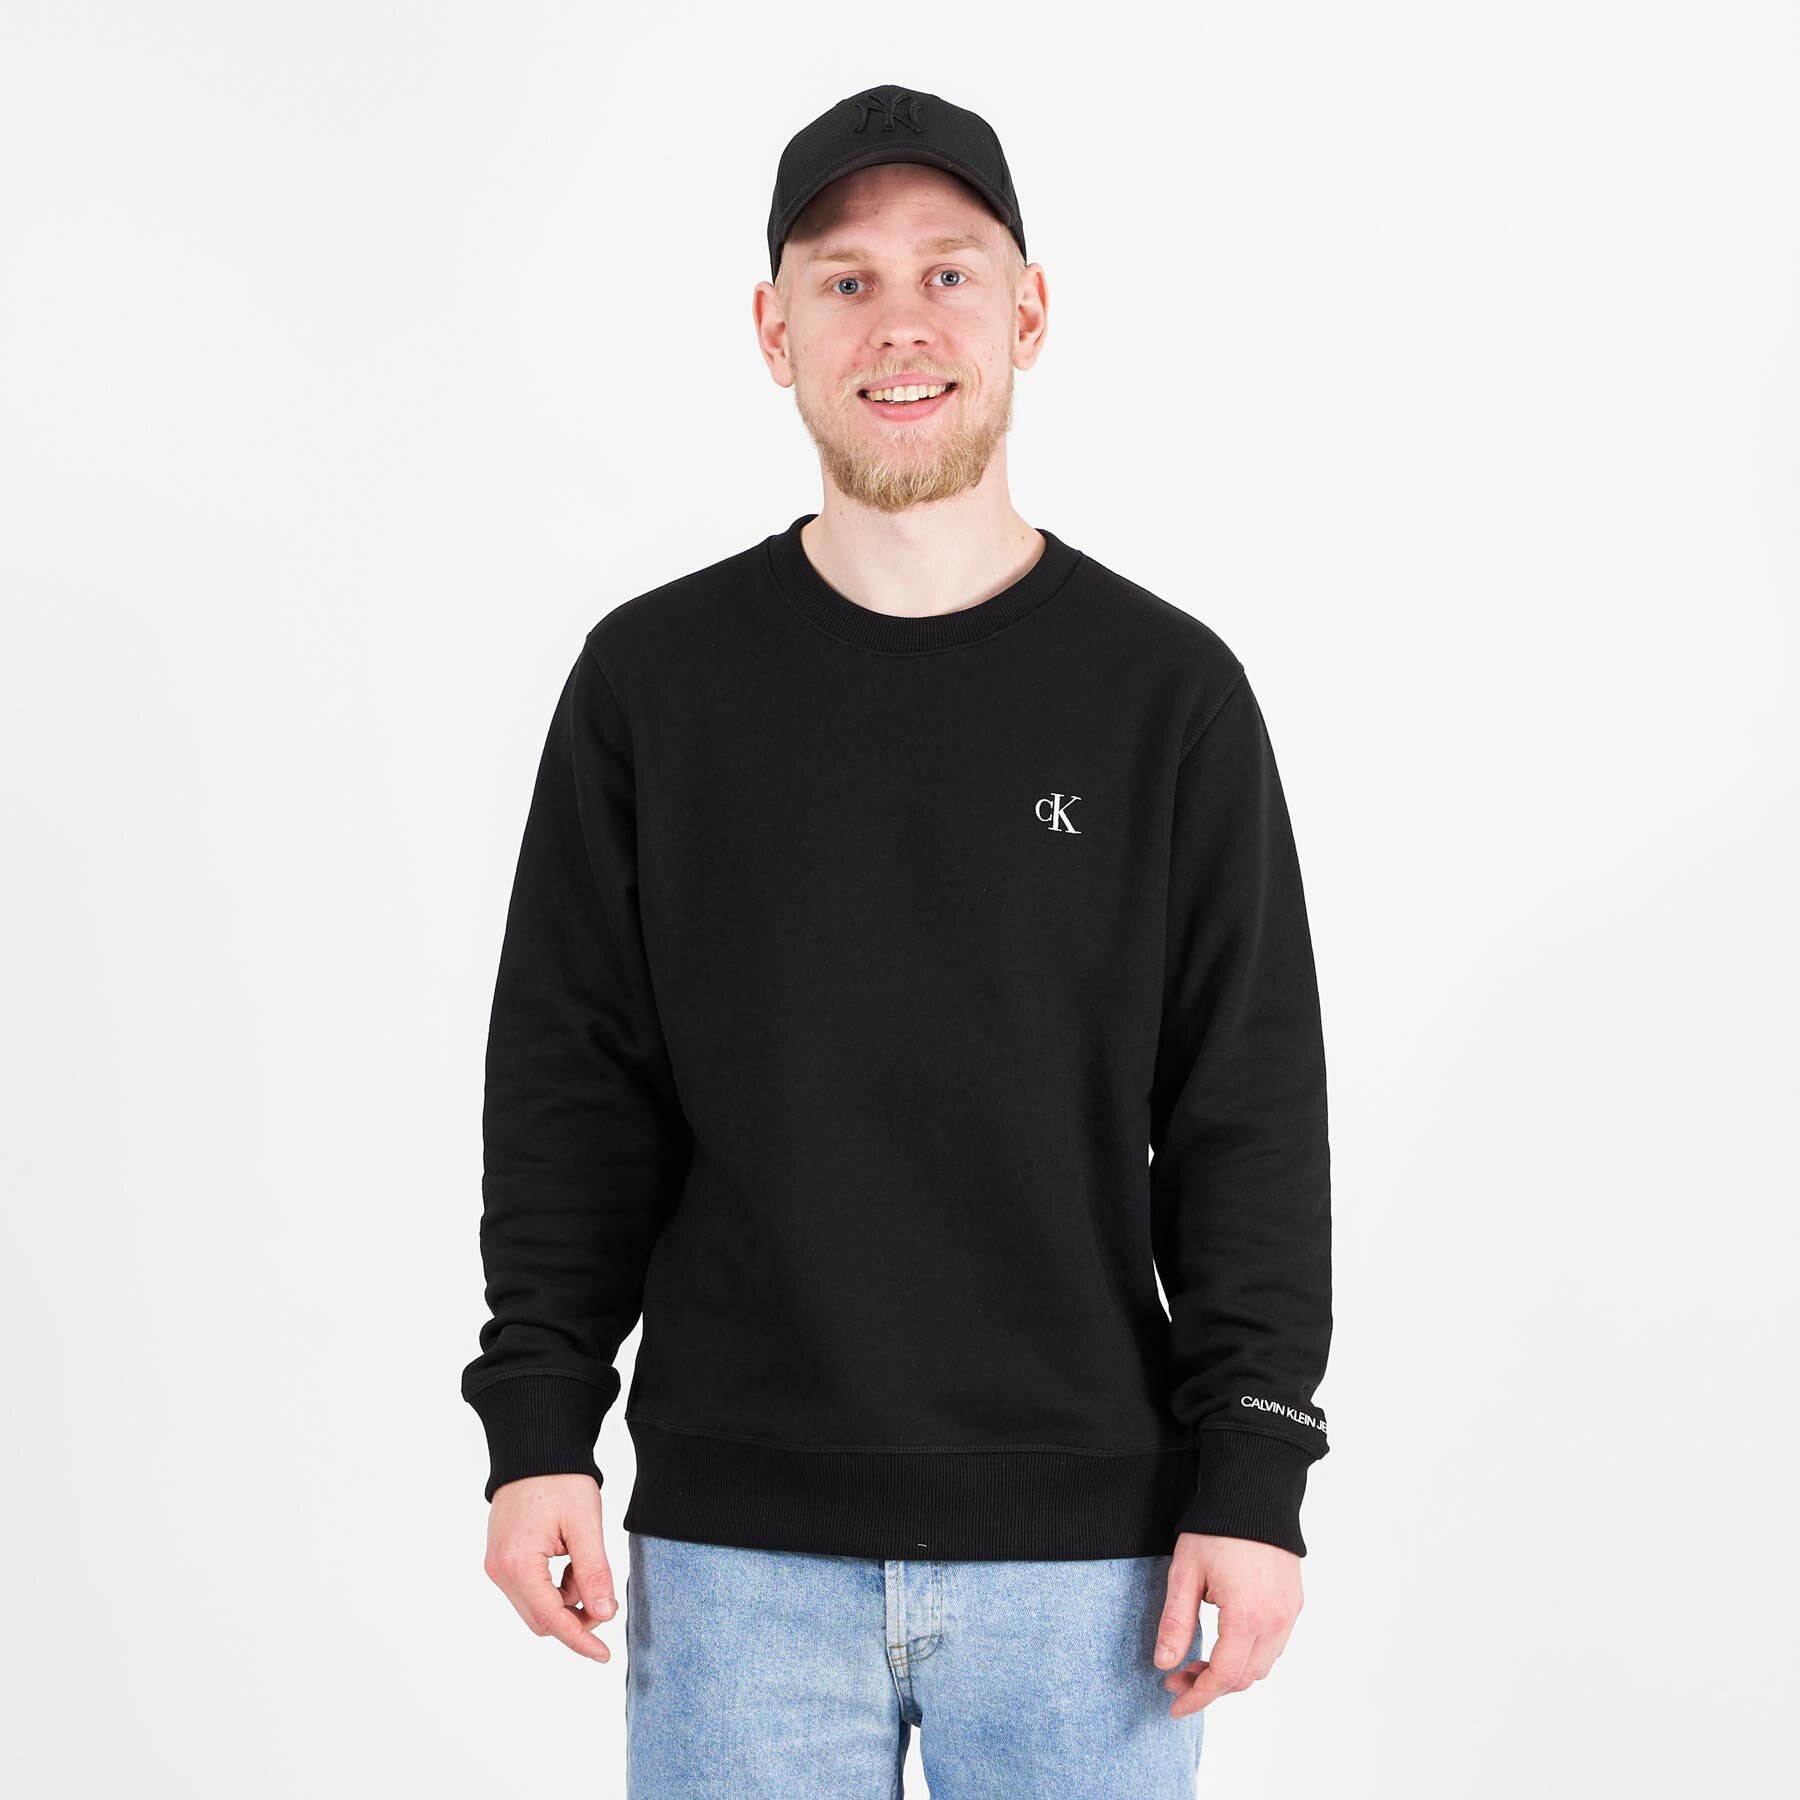 Calvin Klein - Ck essential reg cn - Sweatshirts og trøjer til herre - Sort - XL